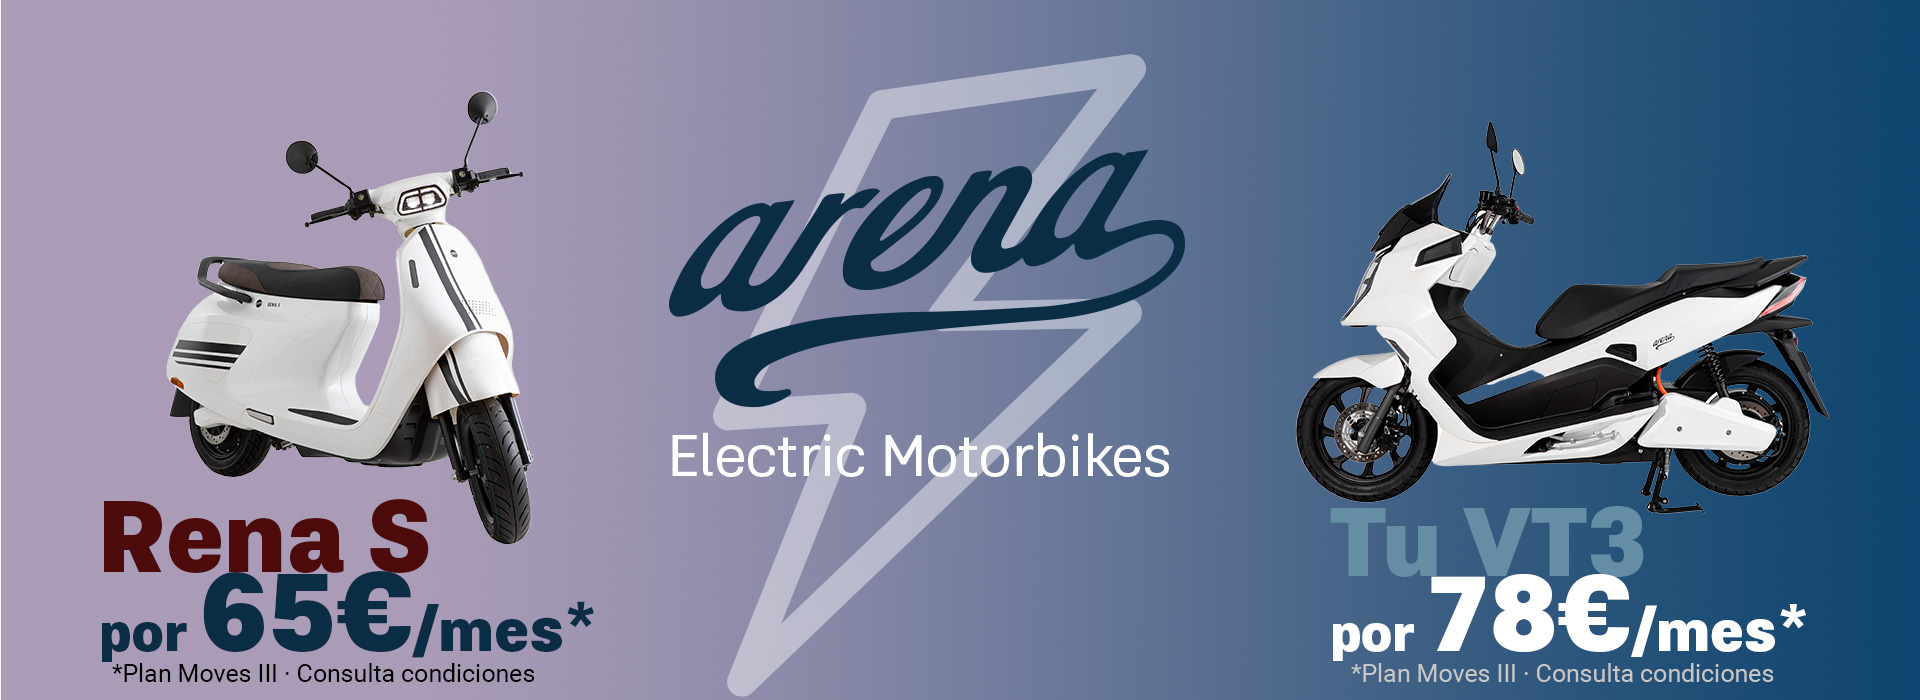 Motos eléctricas | Arena Rena S - VT3 Oferta Cuota